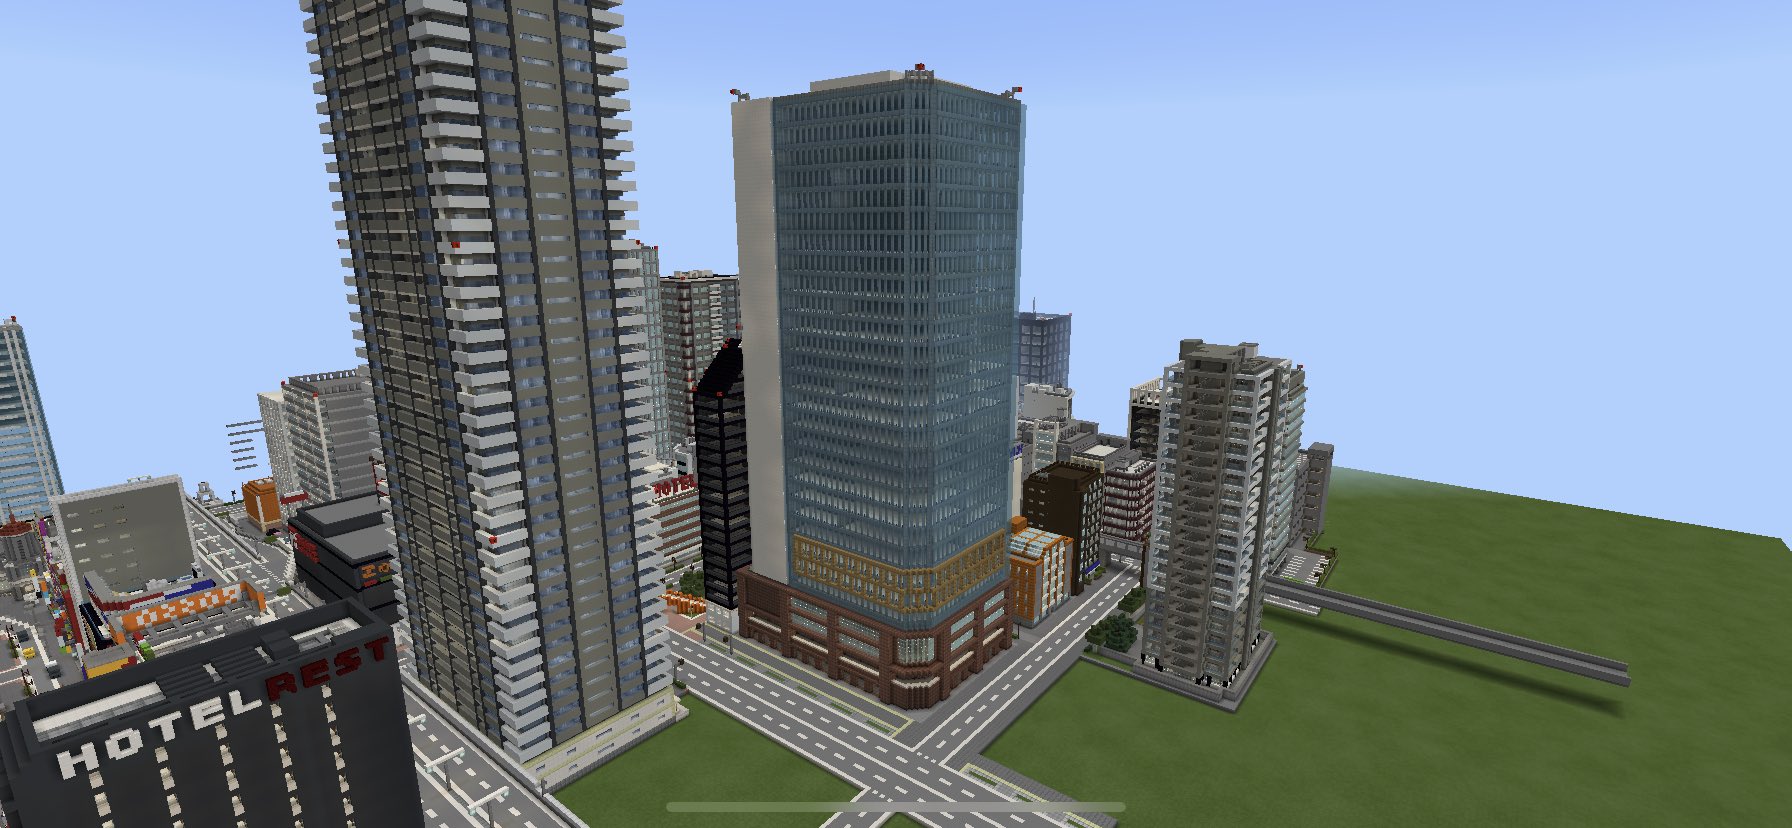 マイクラ大都市建築by田中の支配下 در توییتر マインクラフト Minecraft 現代建築 今日の建築no 55 ガラス張りの複合ビル 久しぶりの大型建築 疲れました